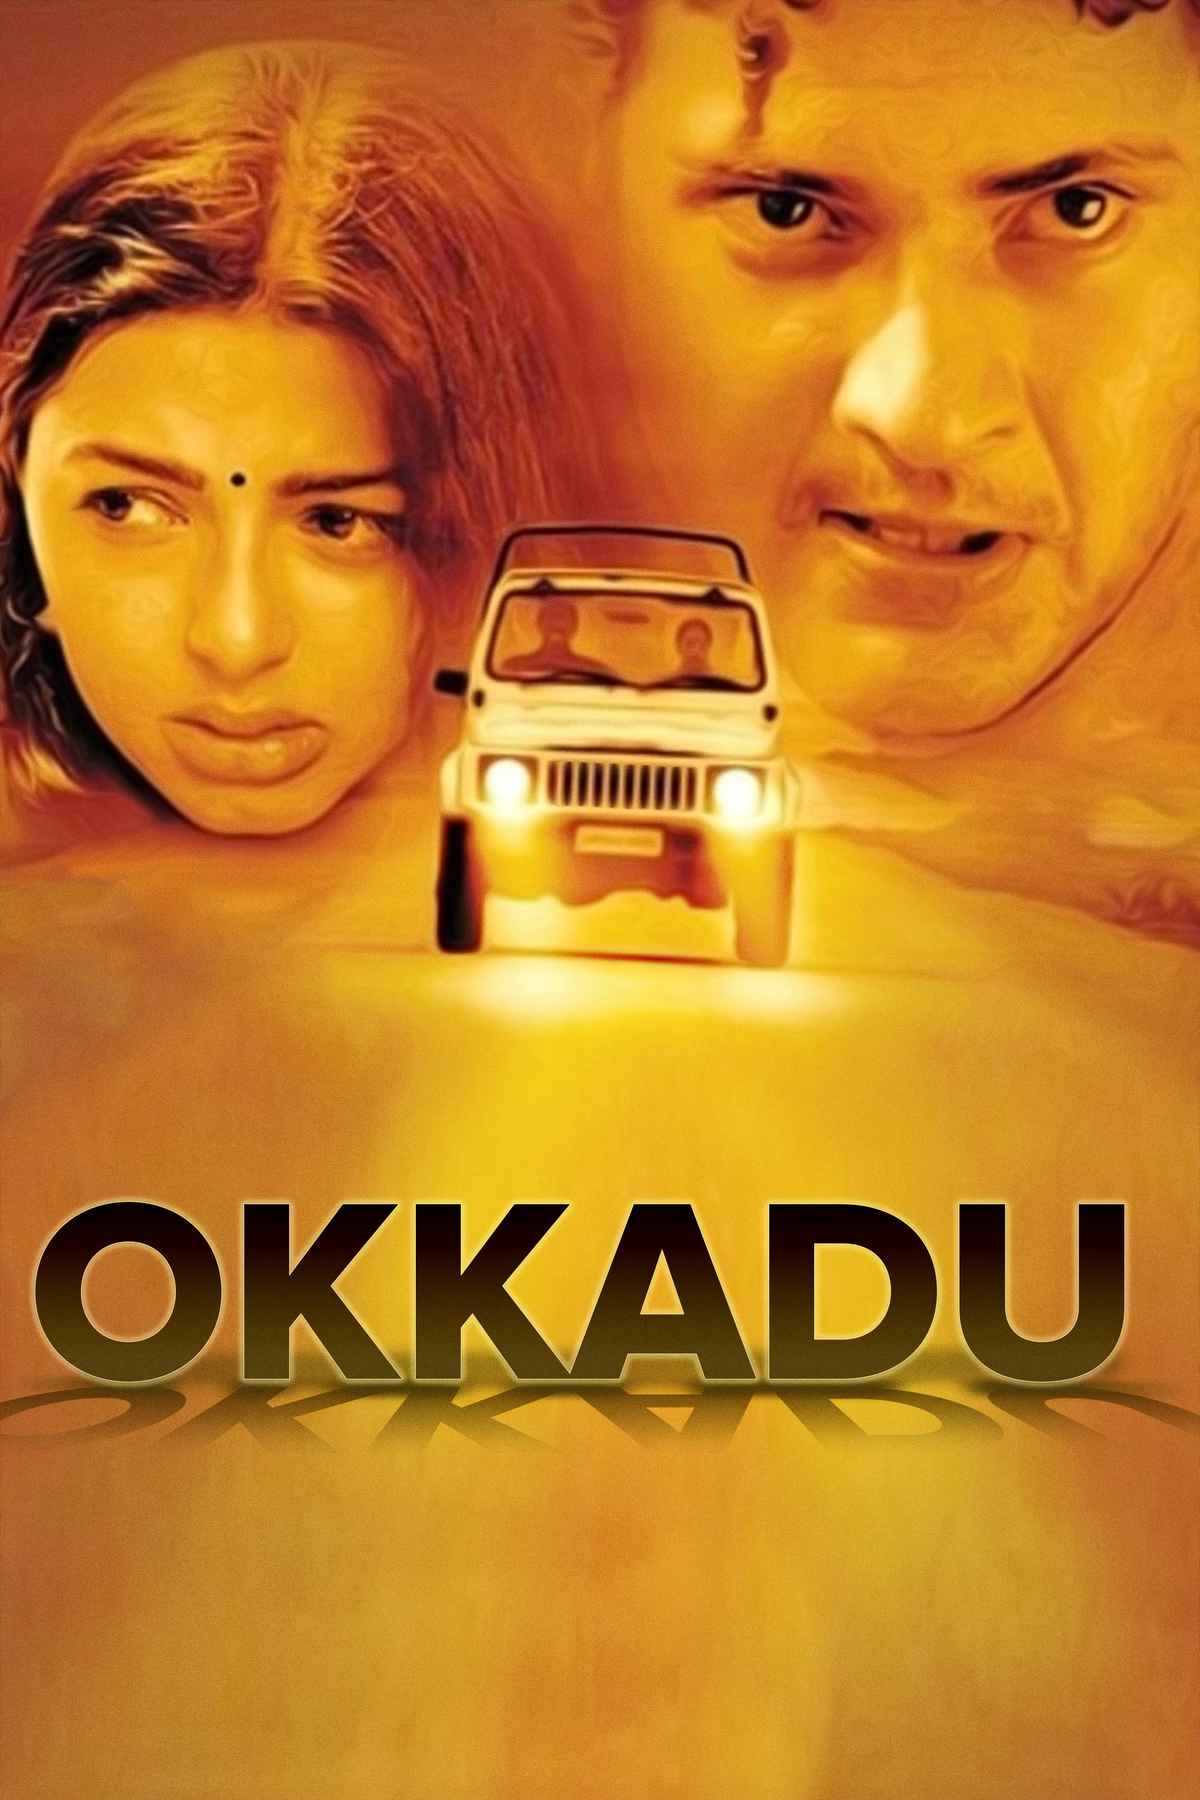 Okkadu